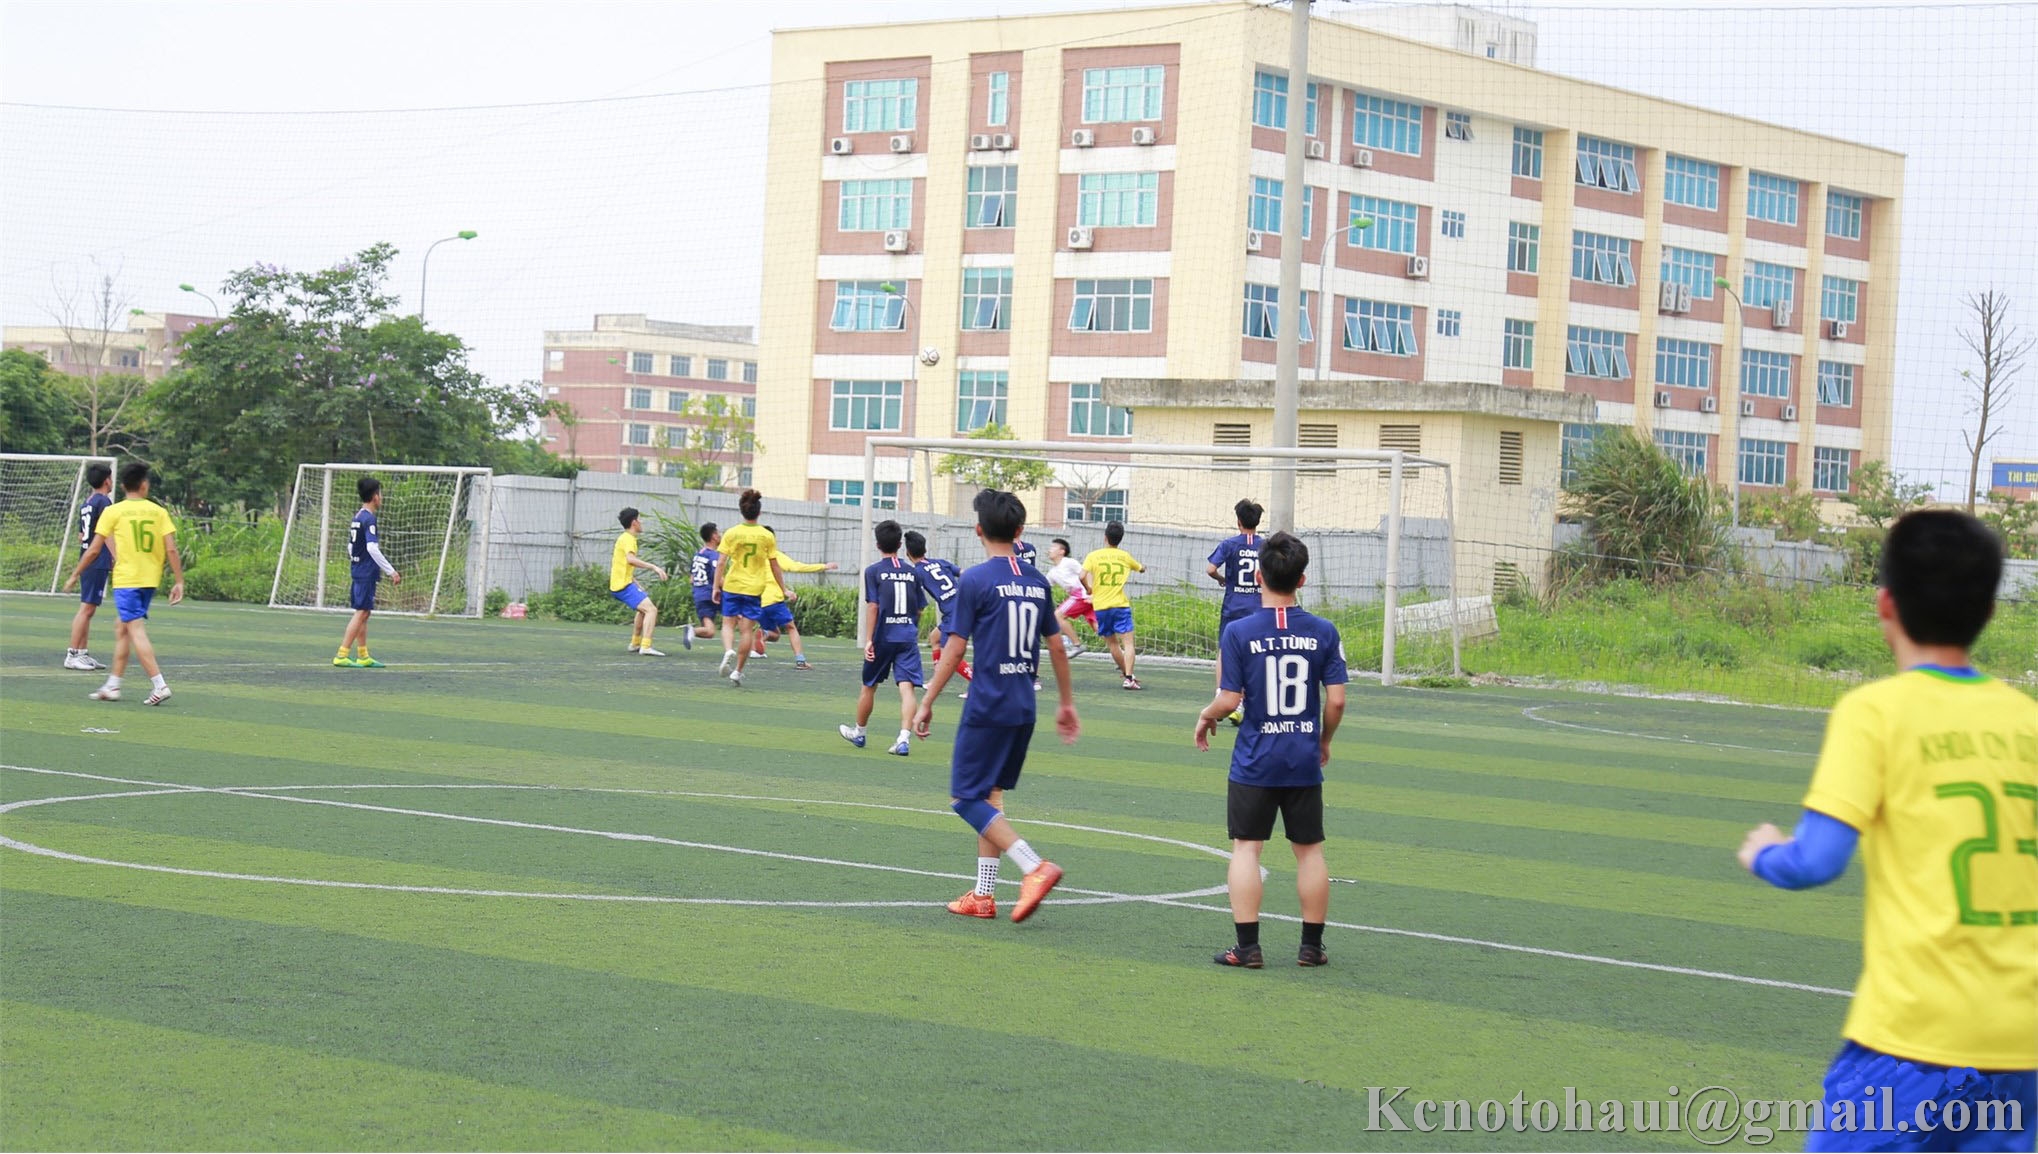 Đội tuyển bóng đá Khoa Công nghệ ô tô đăng quang tại giải bóng đá Nam học sinh sinh viên trường Đại học công nghiệp Hà Nội năm 2019